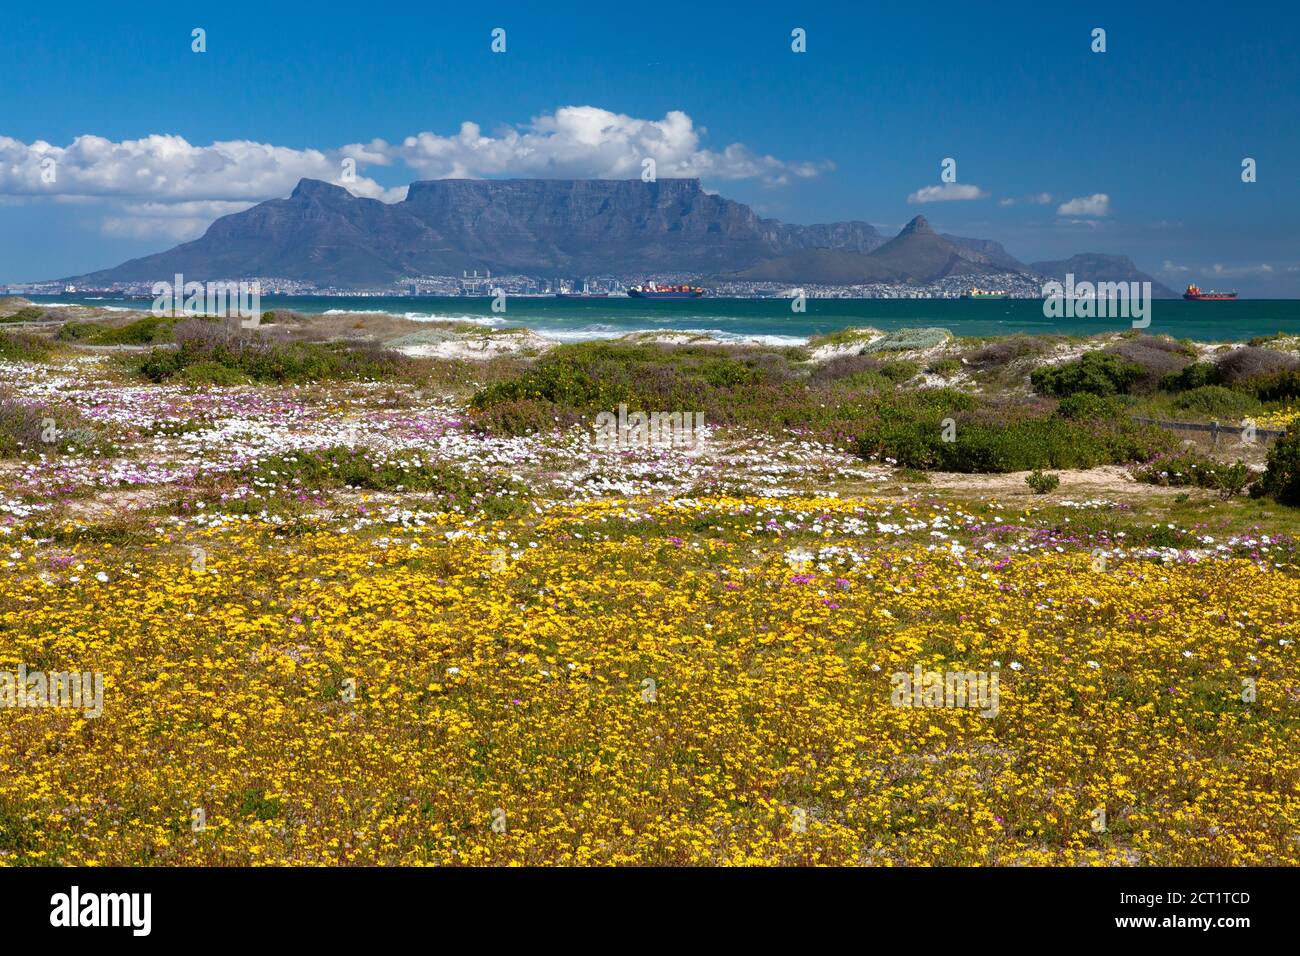 carte postale vue sur la montagne de la table cape town afrique du sud avec fleurs de printemps colorées de la destination touristique de bloubergstrand Banque D'Images